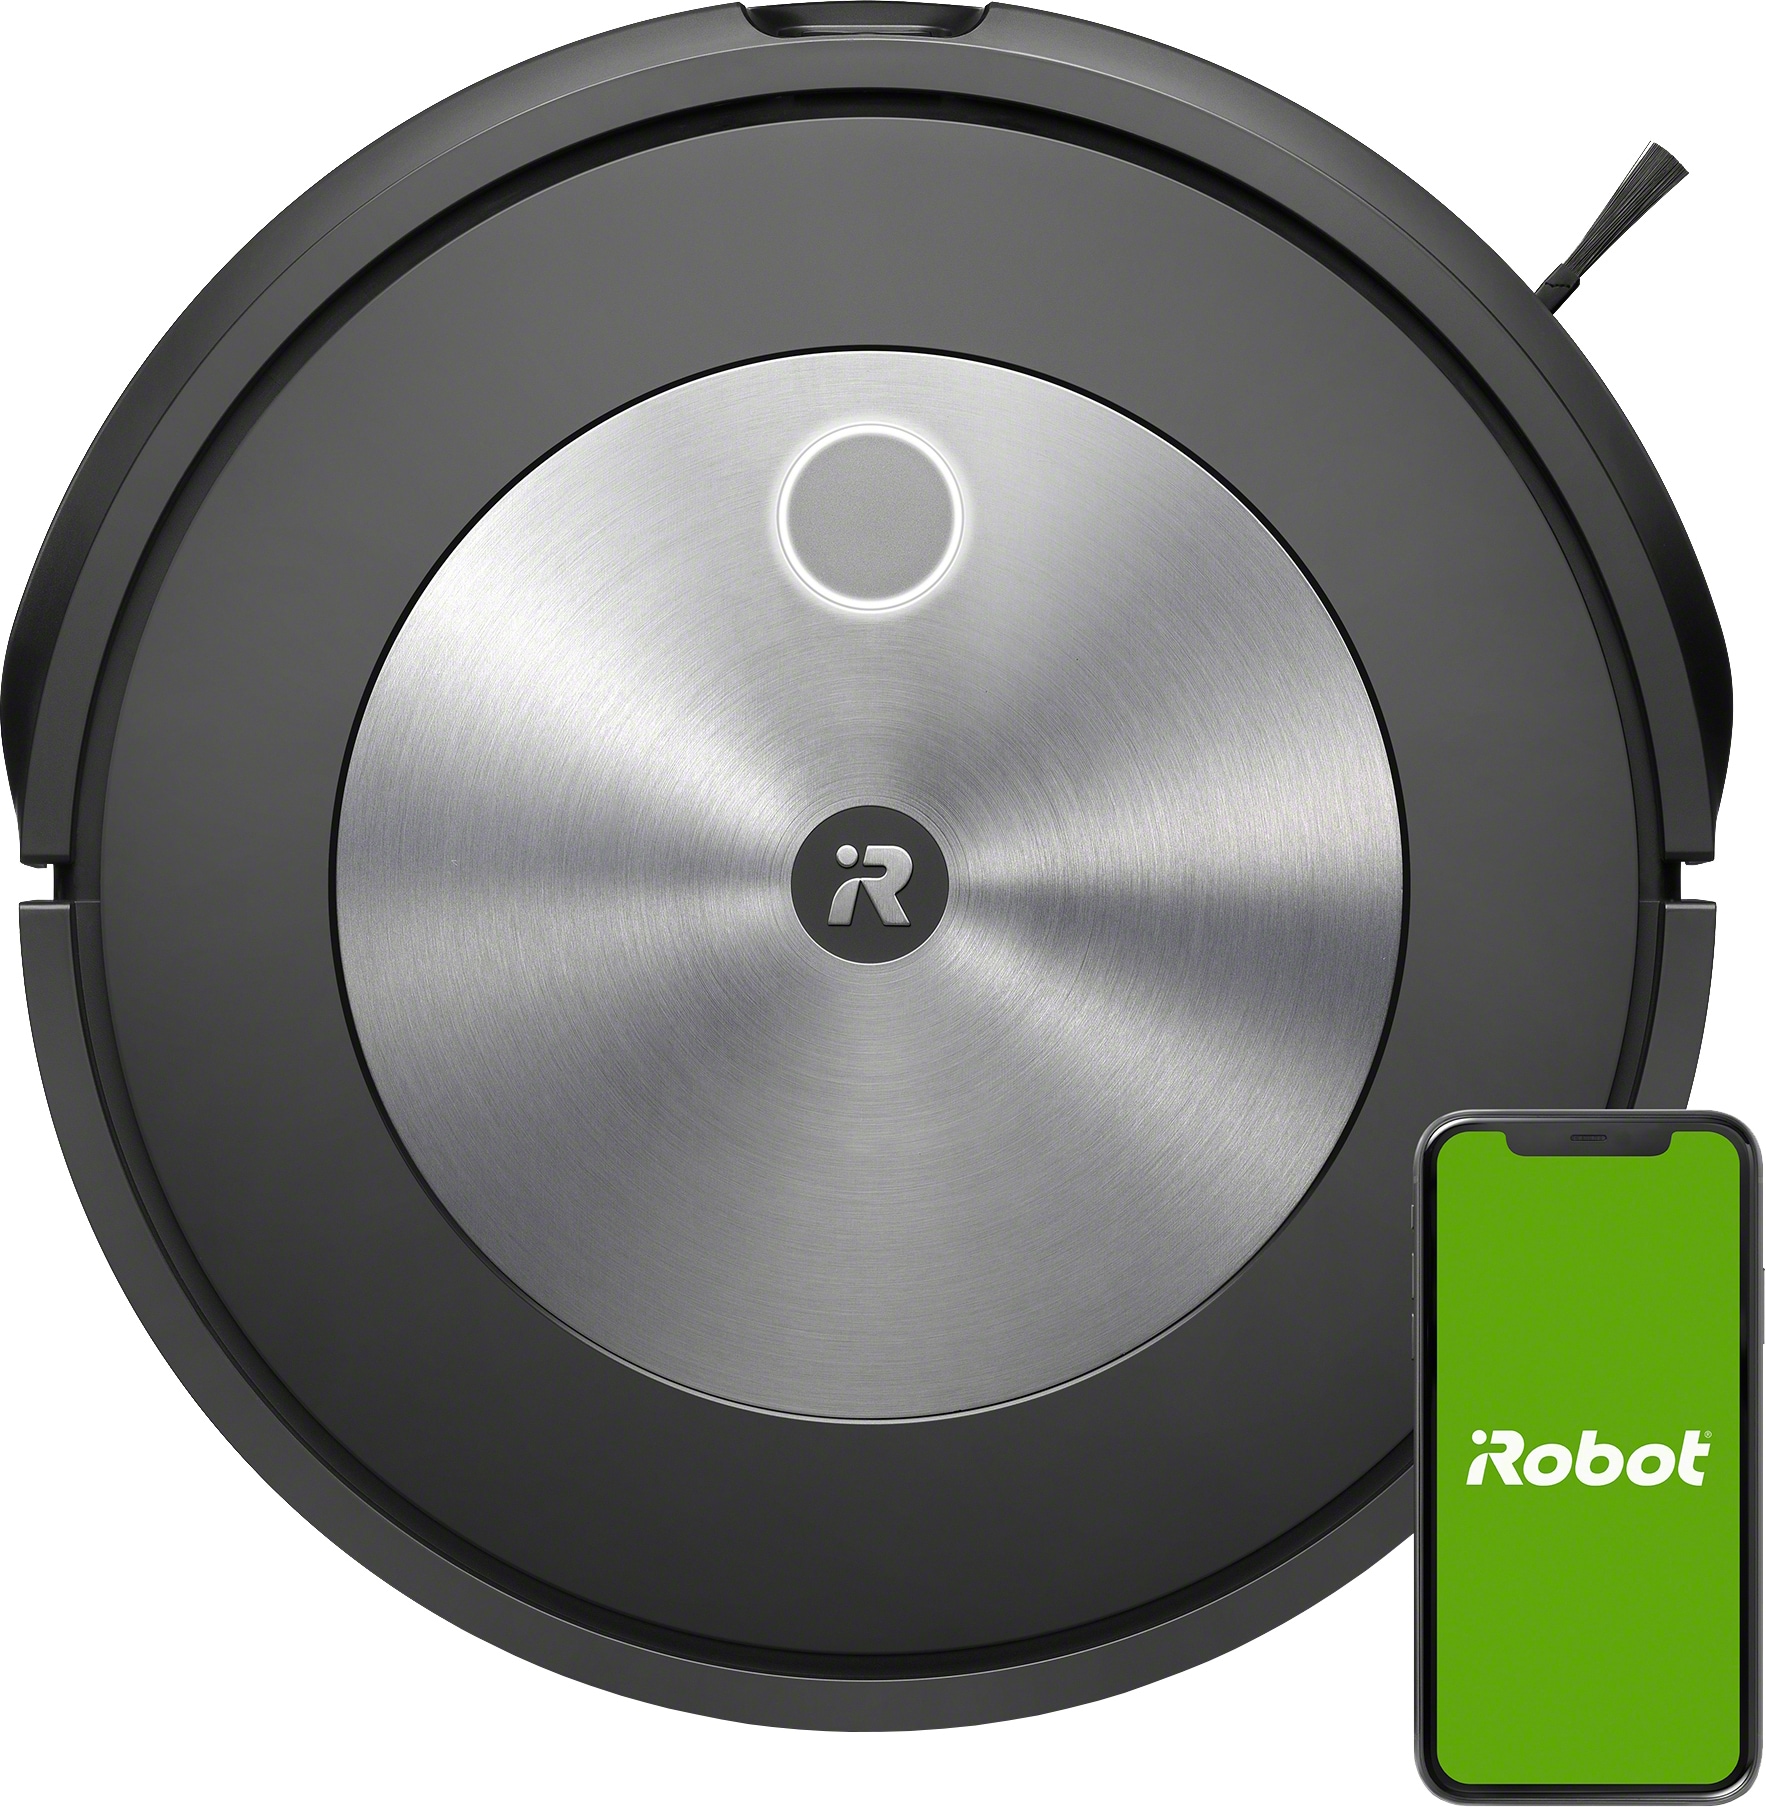 hovedlandet indhente mynte iRobot Roomba J7 robotstøvsuger j715840 (grå) | Elgiganten